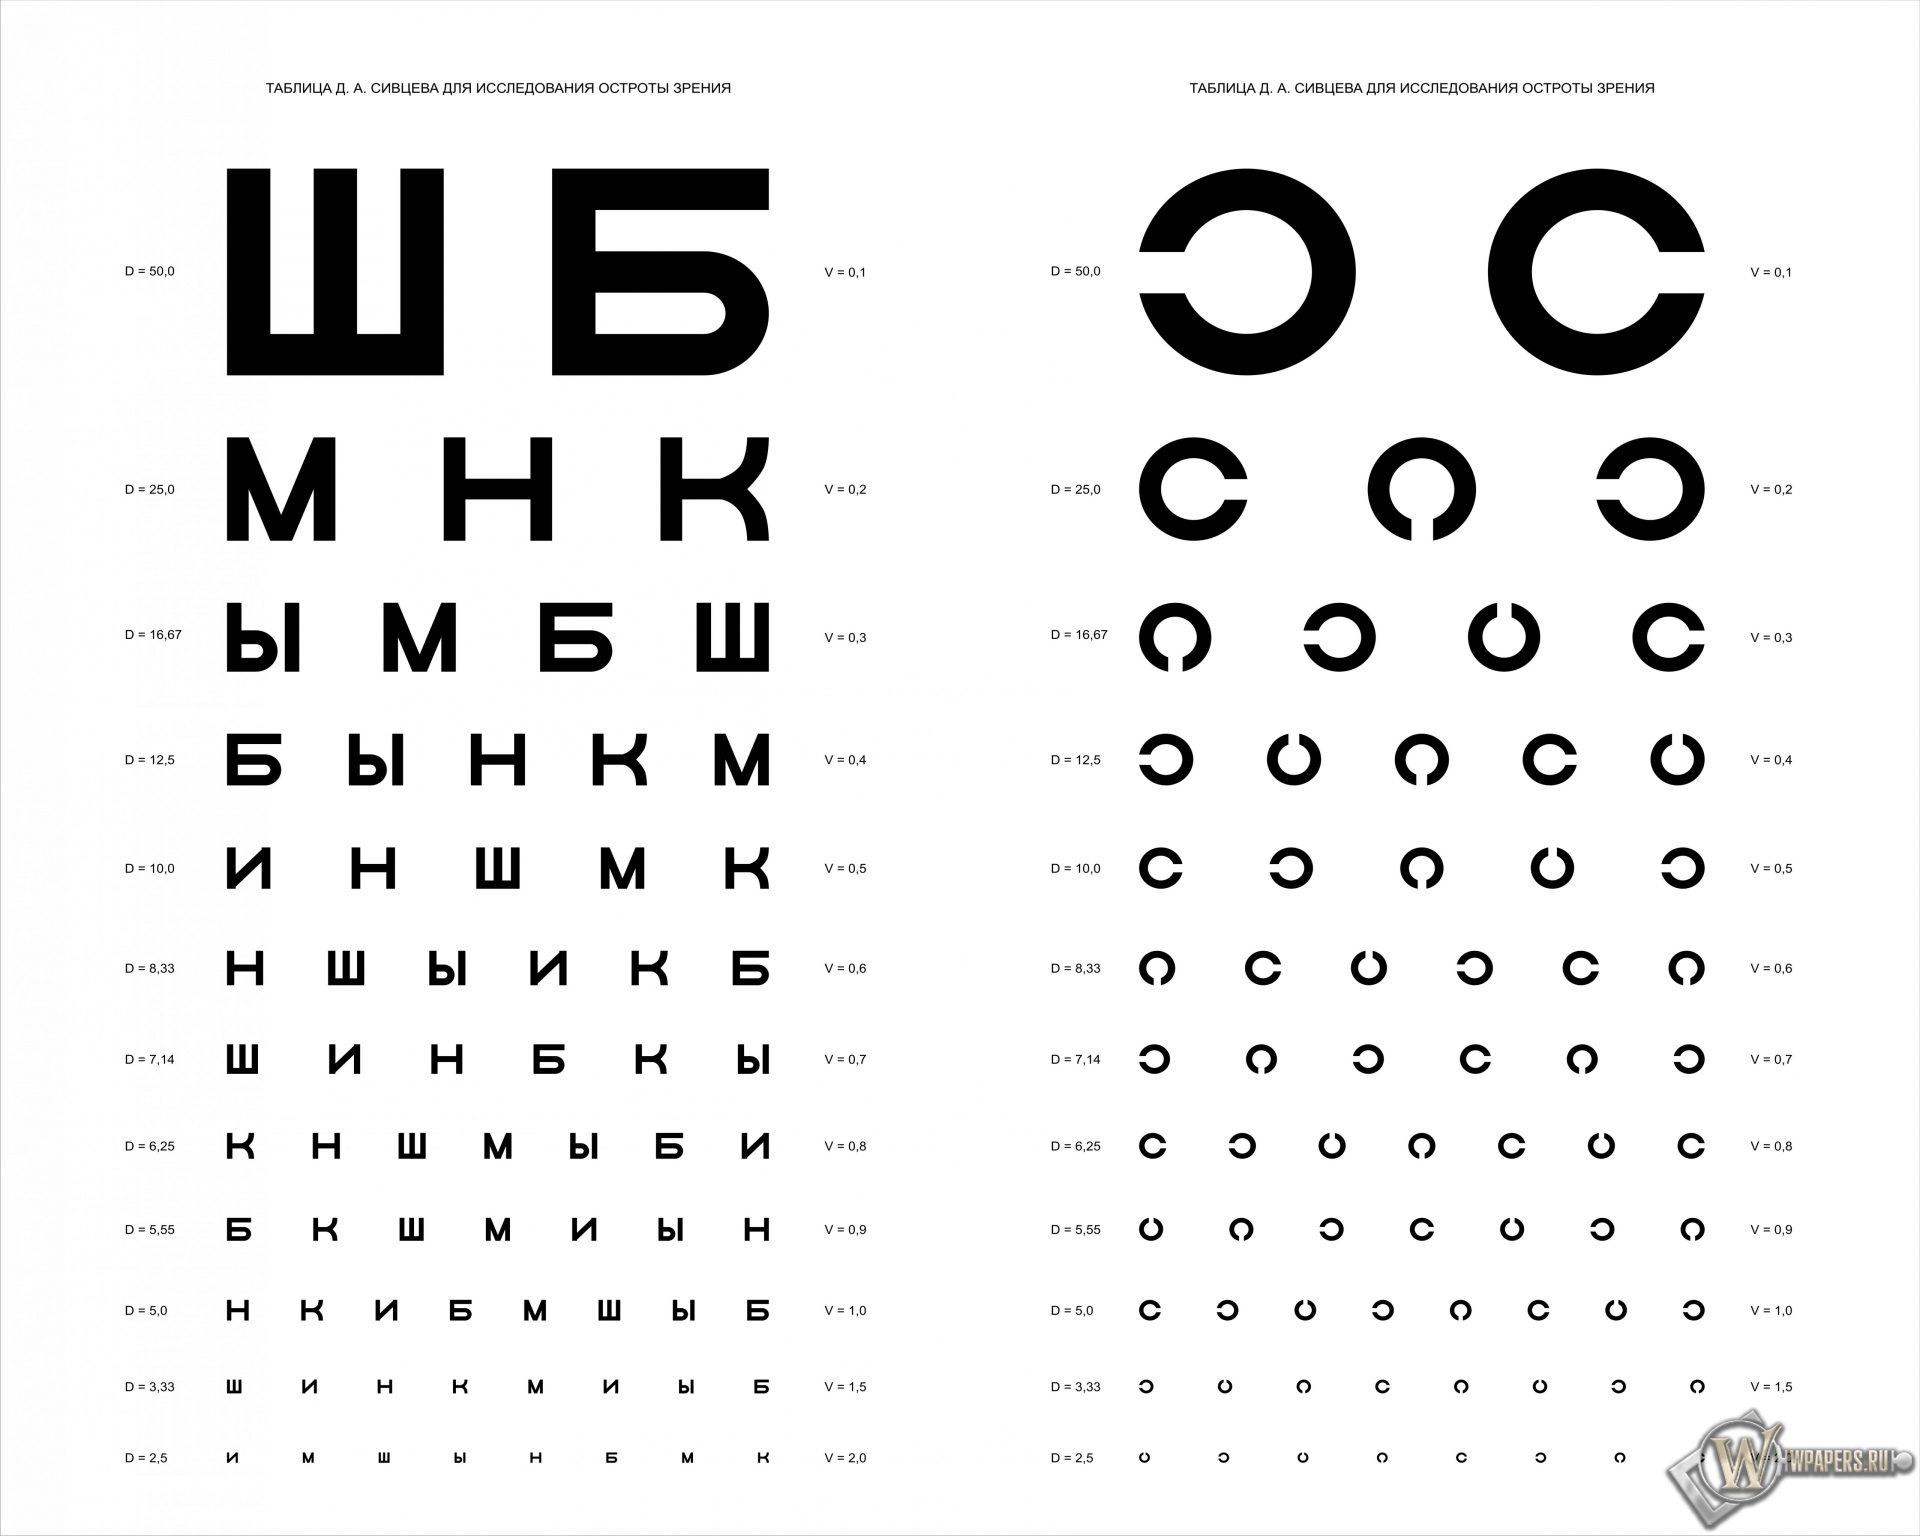 Таблица Д.А. Сивцева для проверки зрения 1920x1536